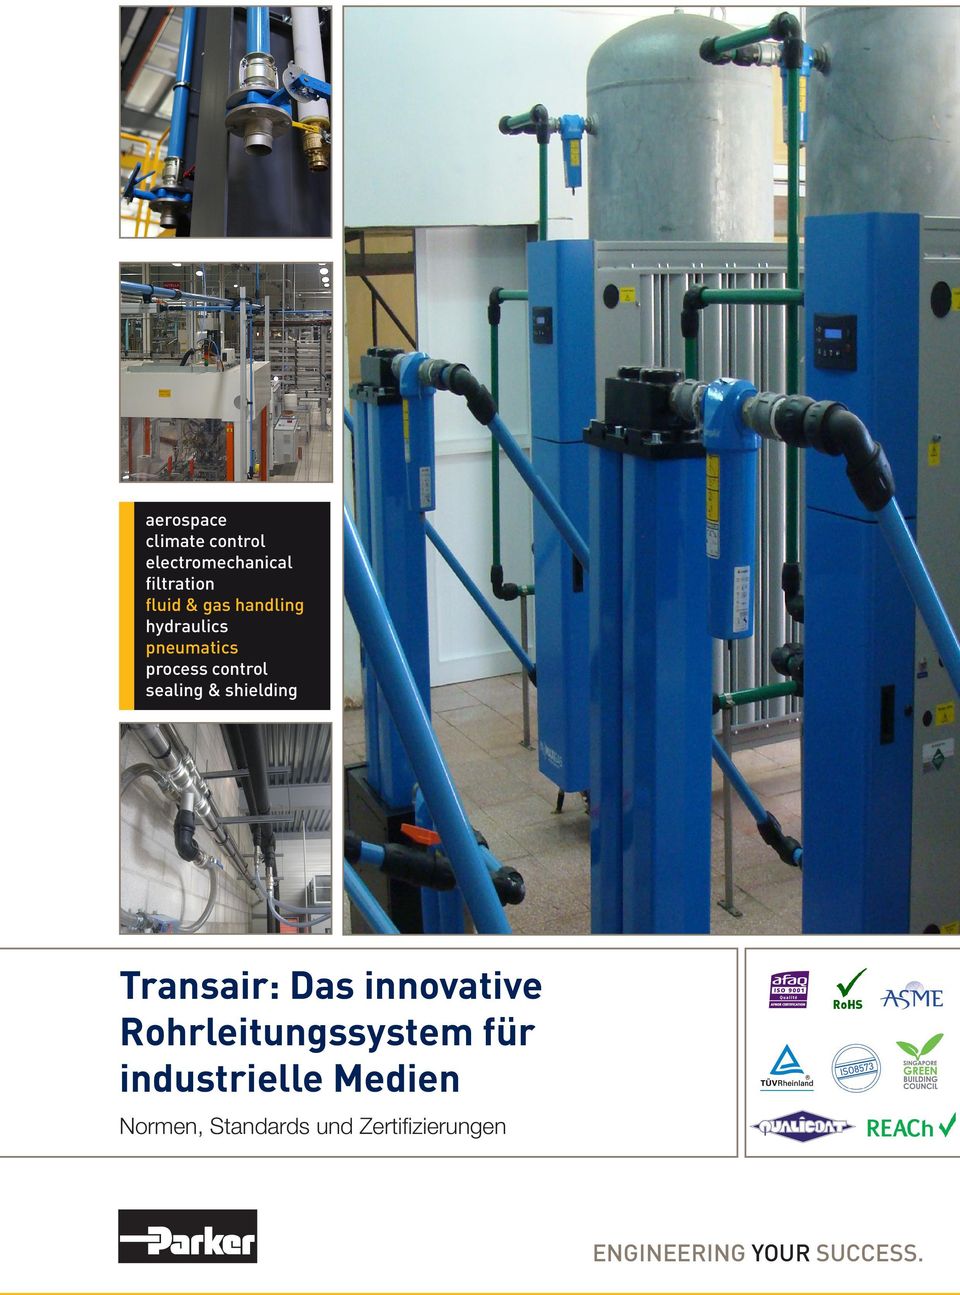 Transair: Das innovative Rohrleitungssystem für industrielle